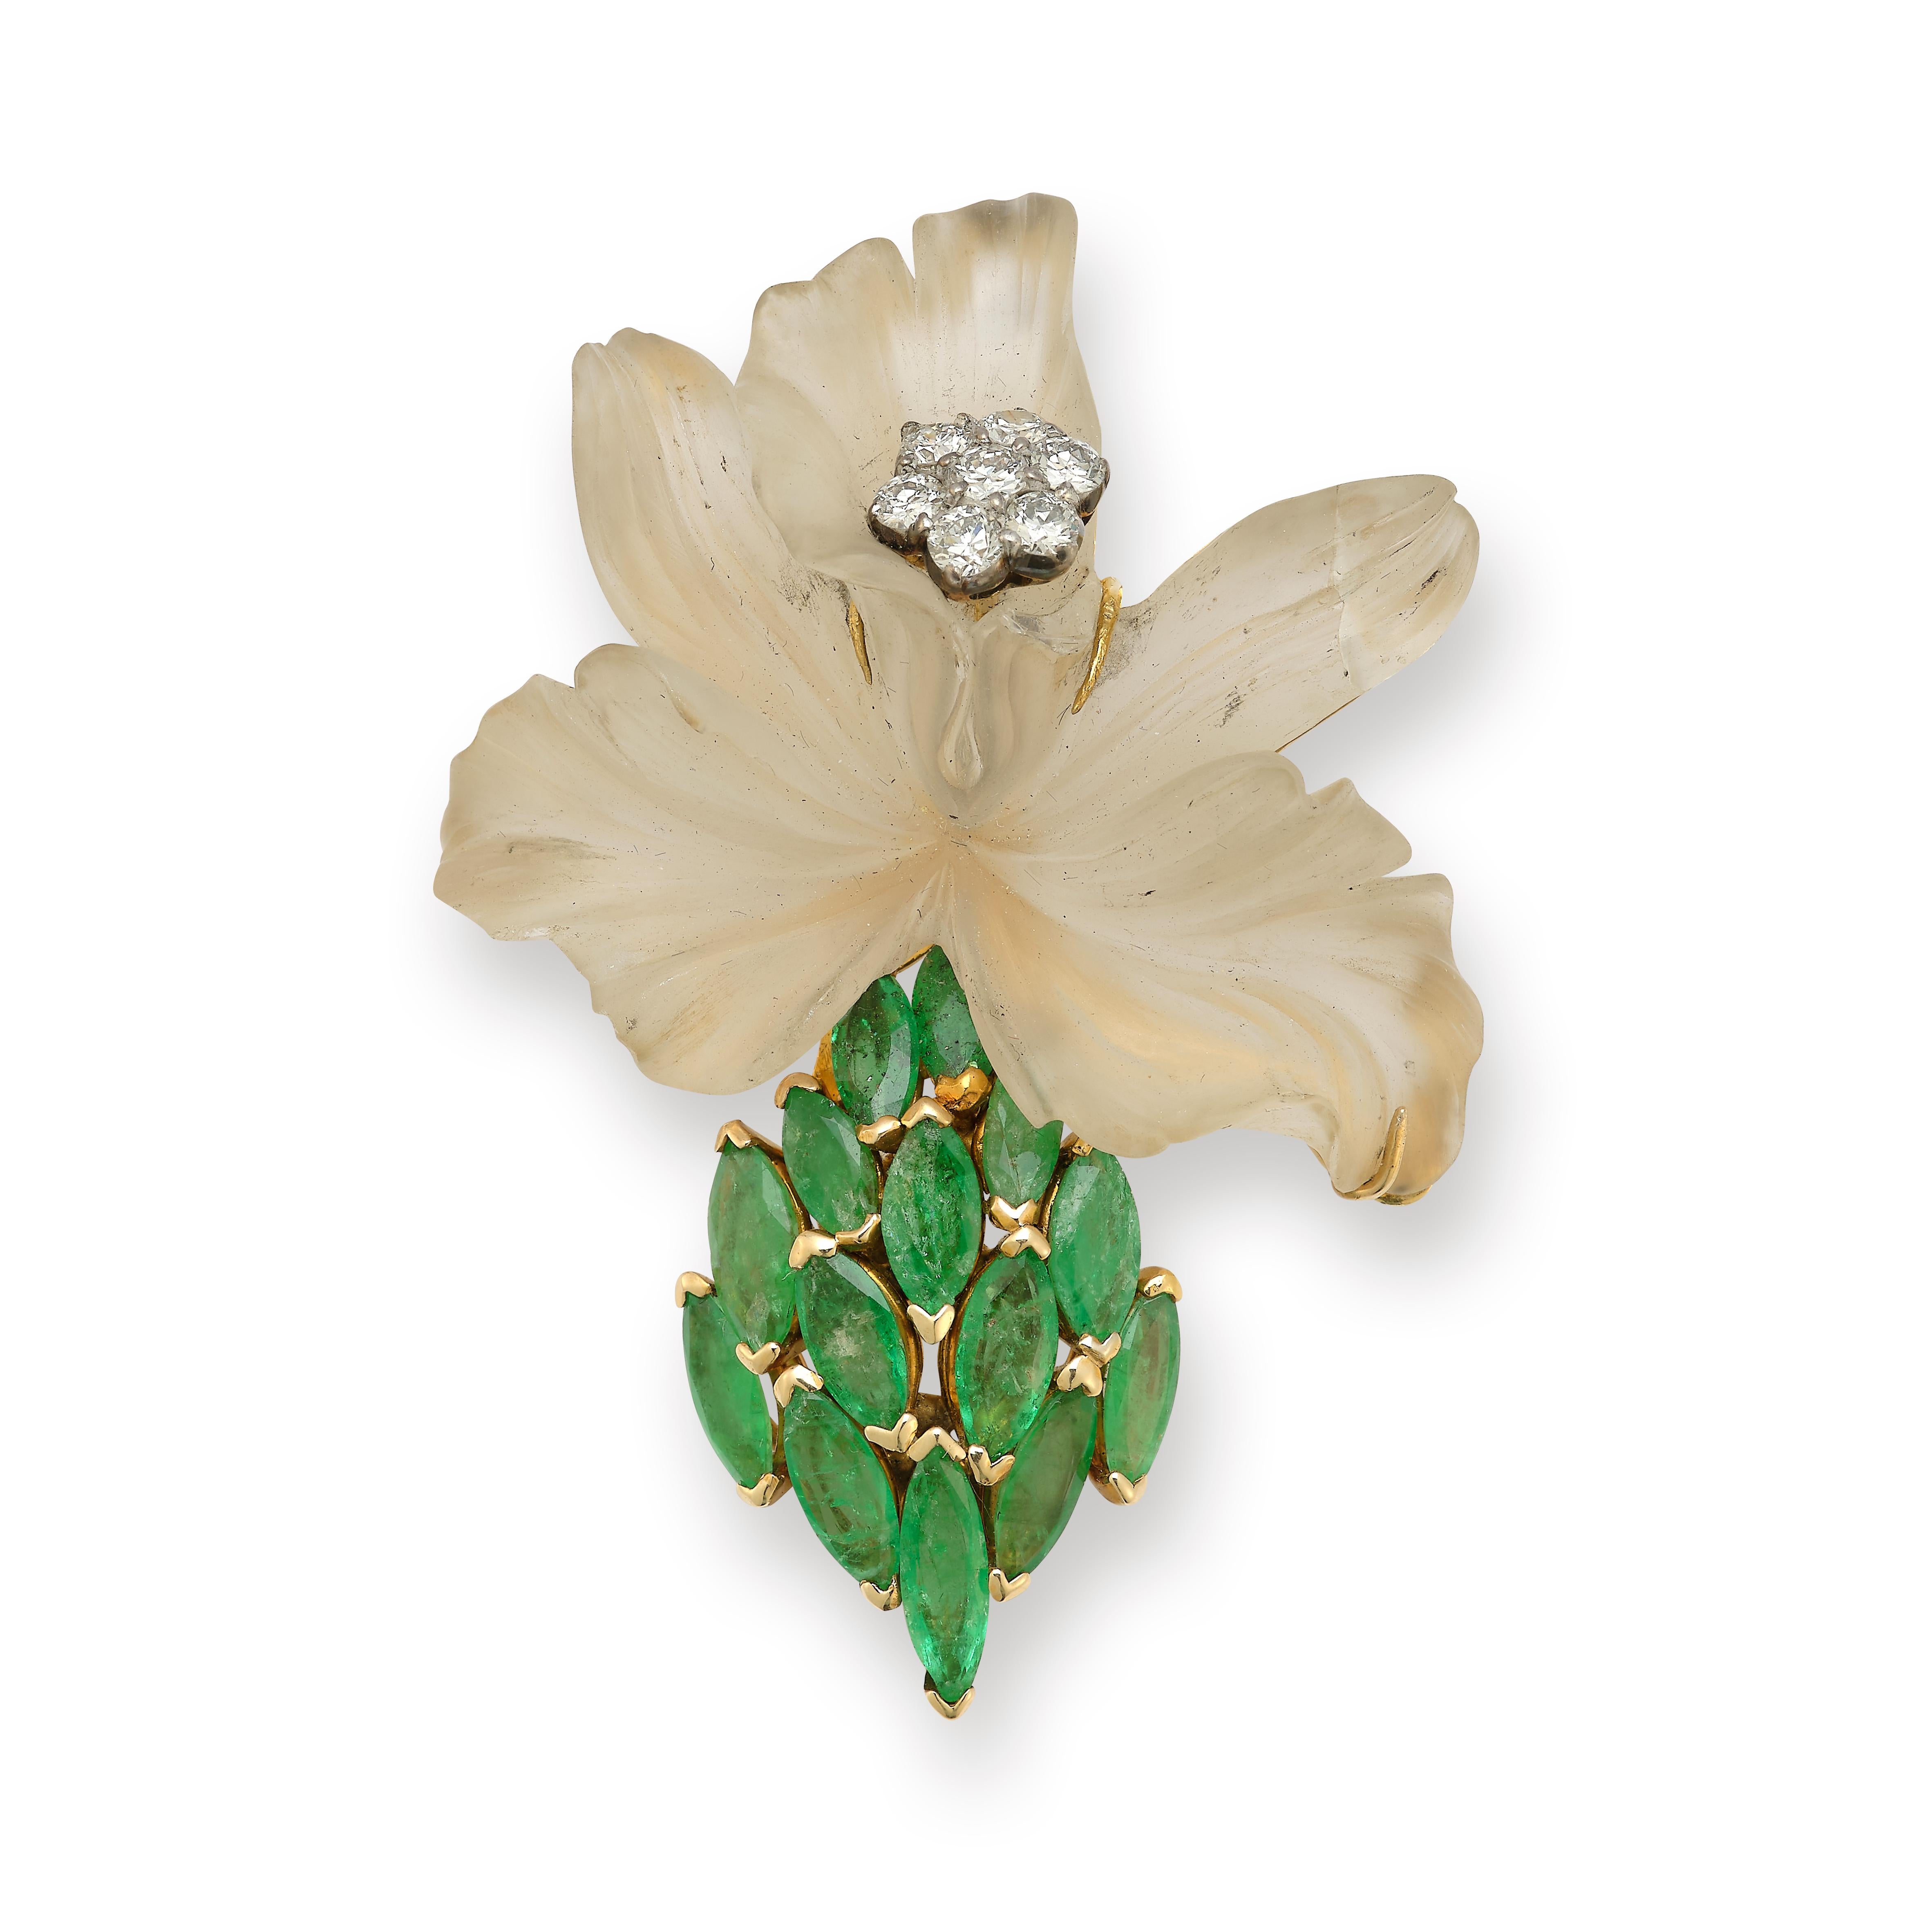 Broche fleur Tiffany & Co

Motif de fleur en cristal de roche sculpté avec 7 diamants de taille ronde formant un  au centre et 14 émeraudes taillées en marquise. 

Poids du diamant : environ 0,88 cts 

Poids de l'émeraude : environ 0,93 cts